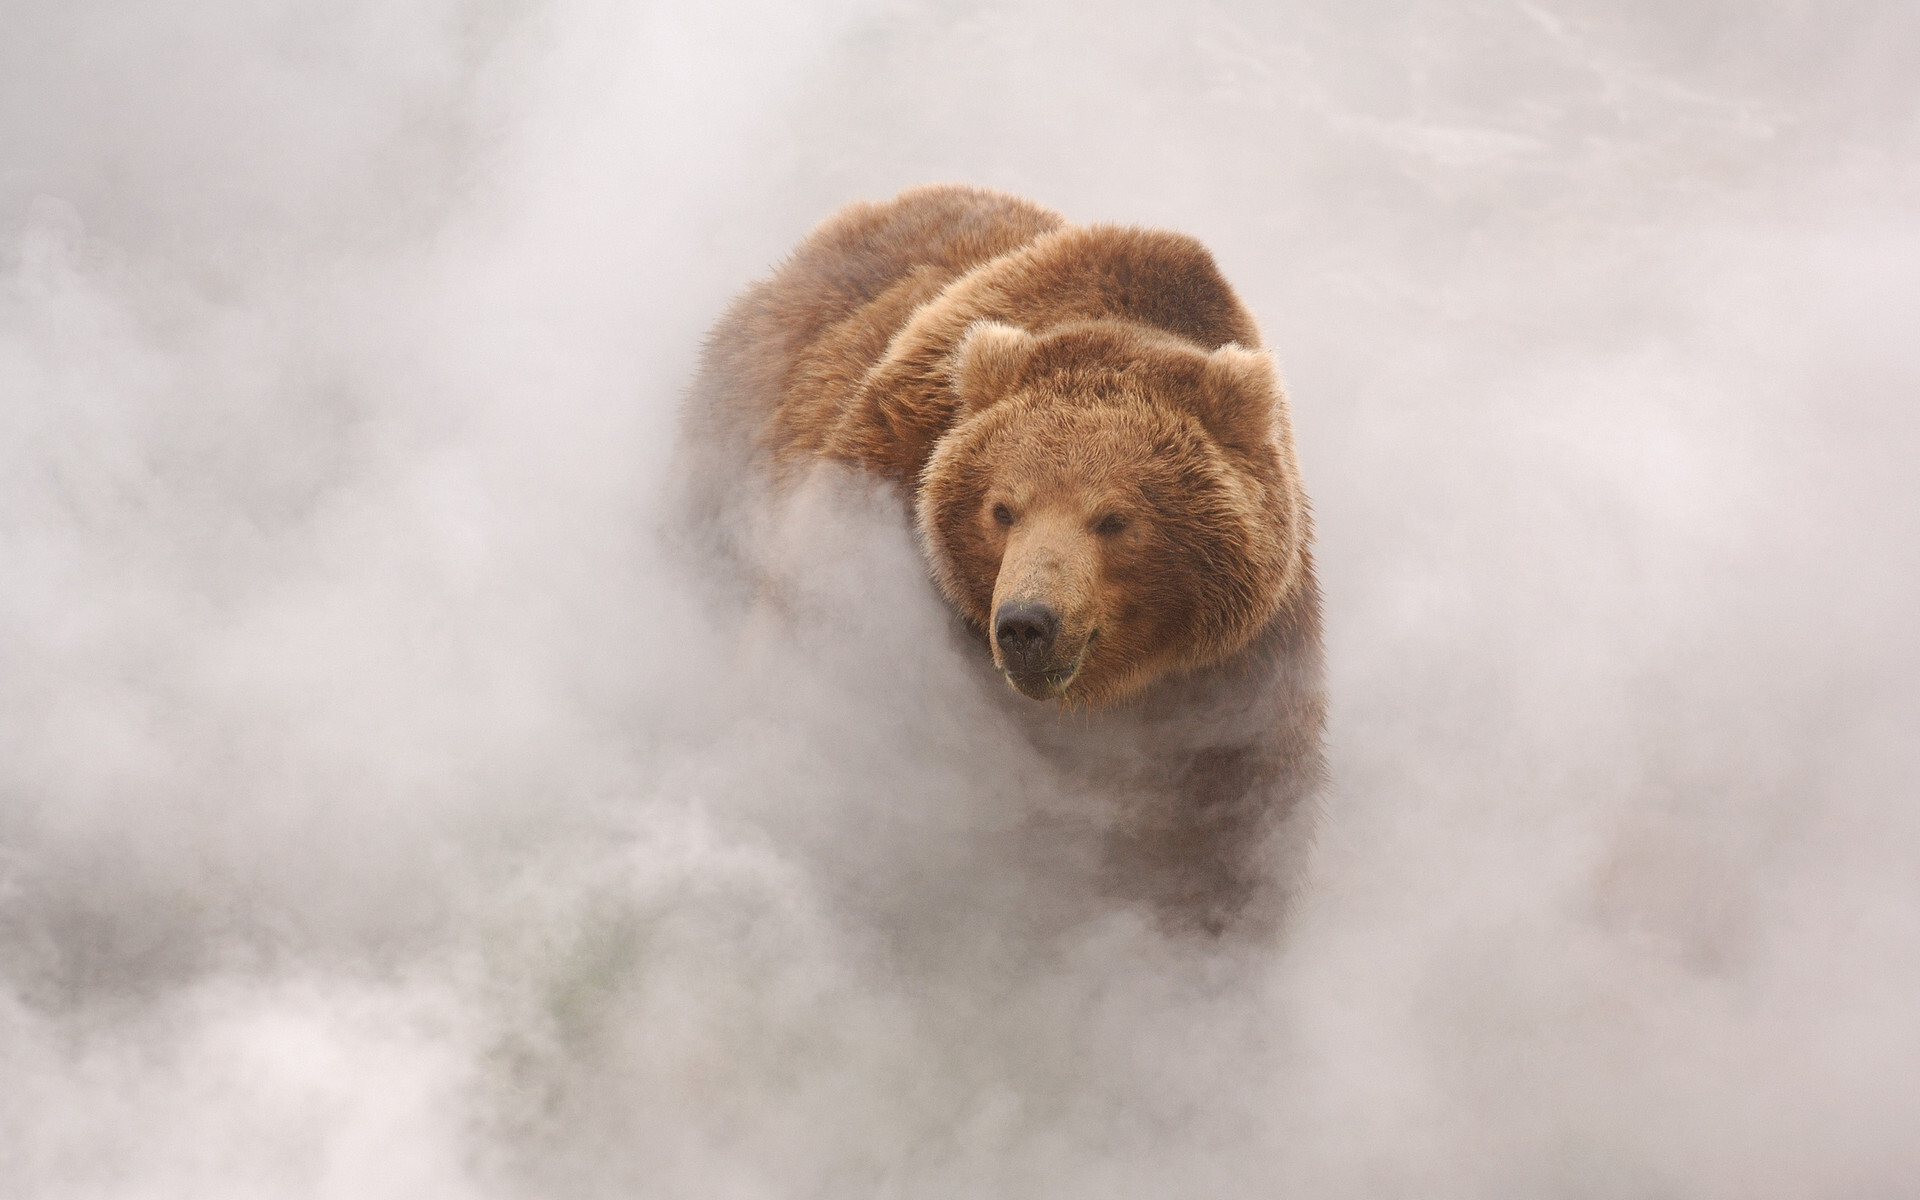 Медведь в пару от гейзера. Долина гейзеров, Кроноцкий заповедник. Фотограф Игорь Шпиленок